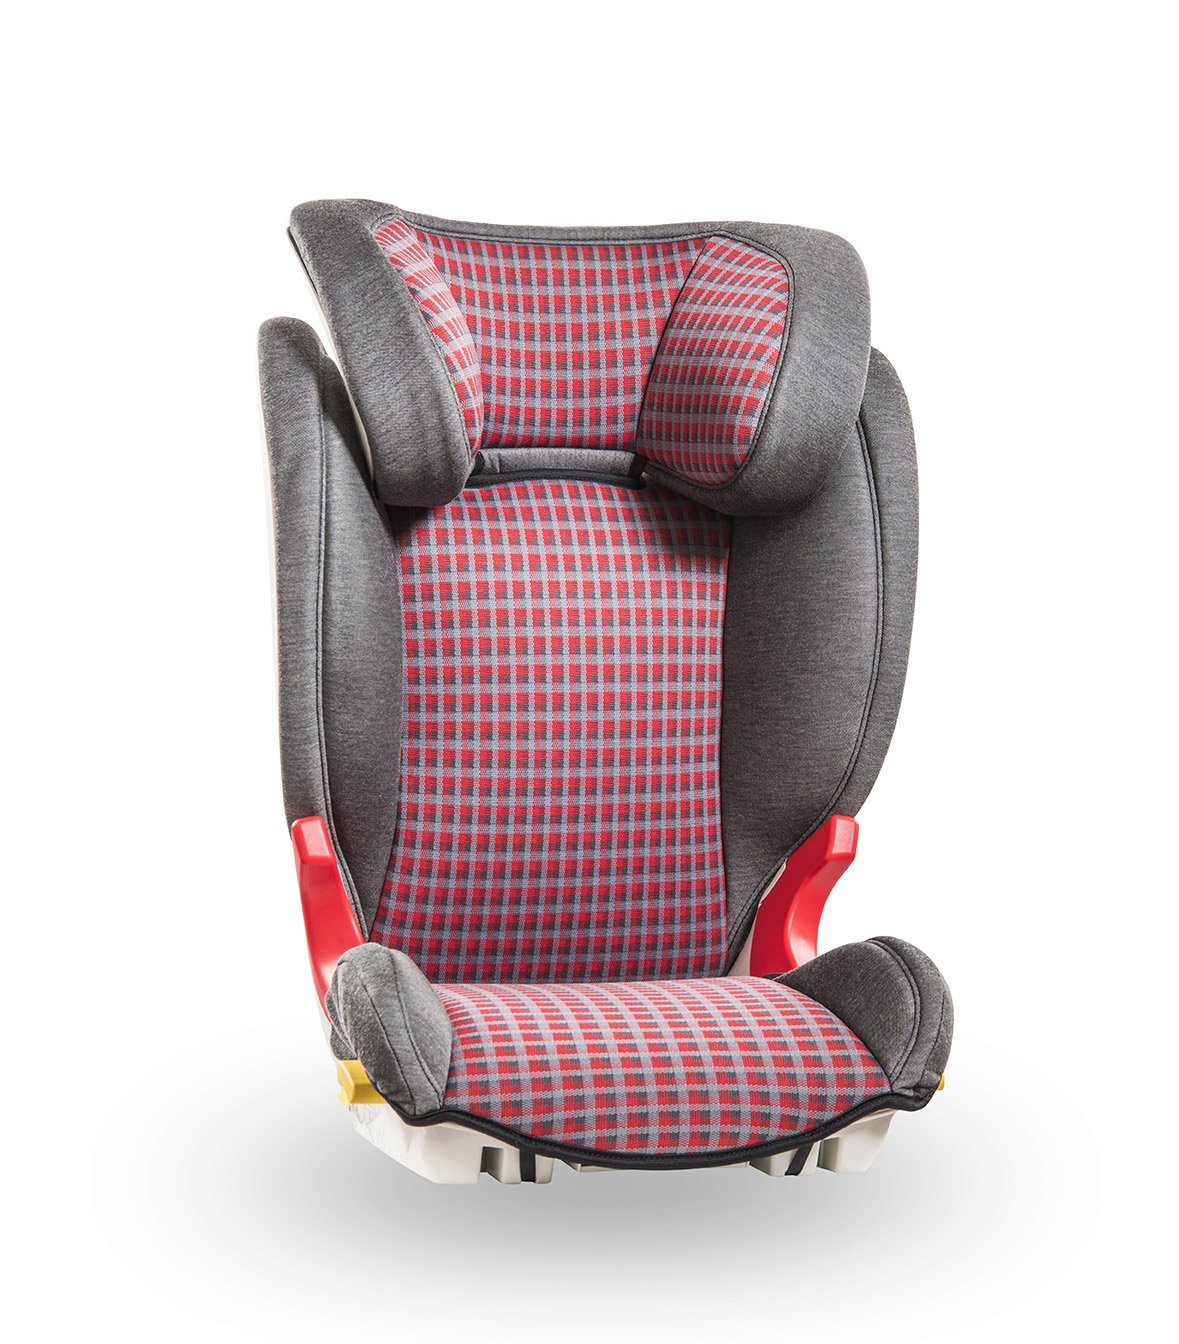 Baier Isofix Child Car Seat Group 2/3, 15-36 kg Model: Adefix Karo